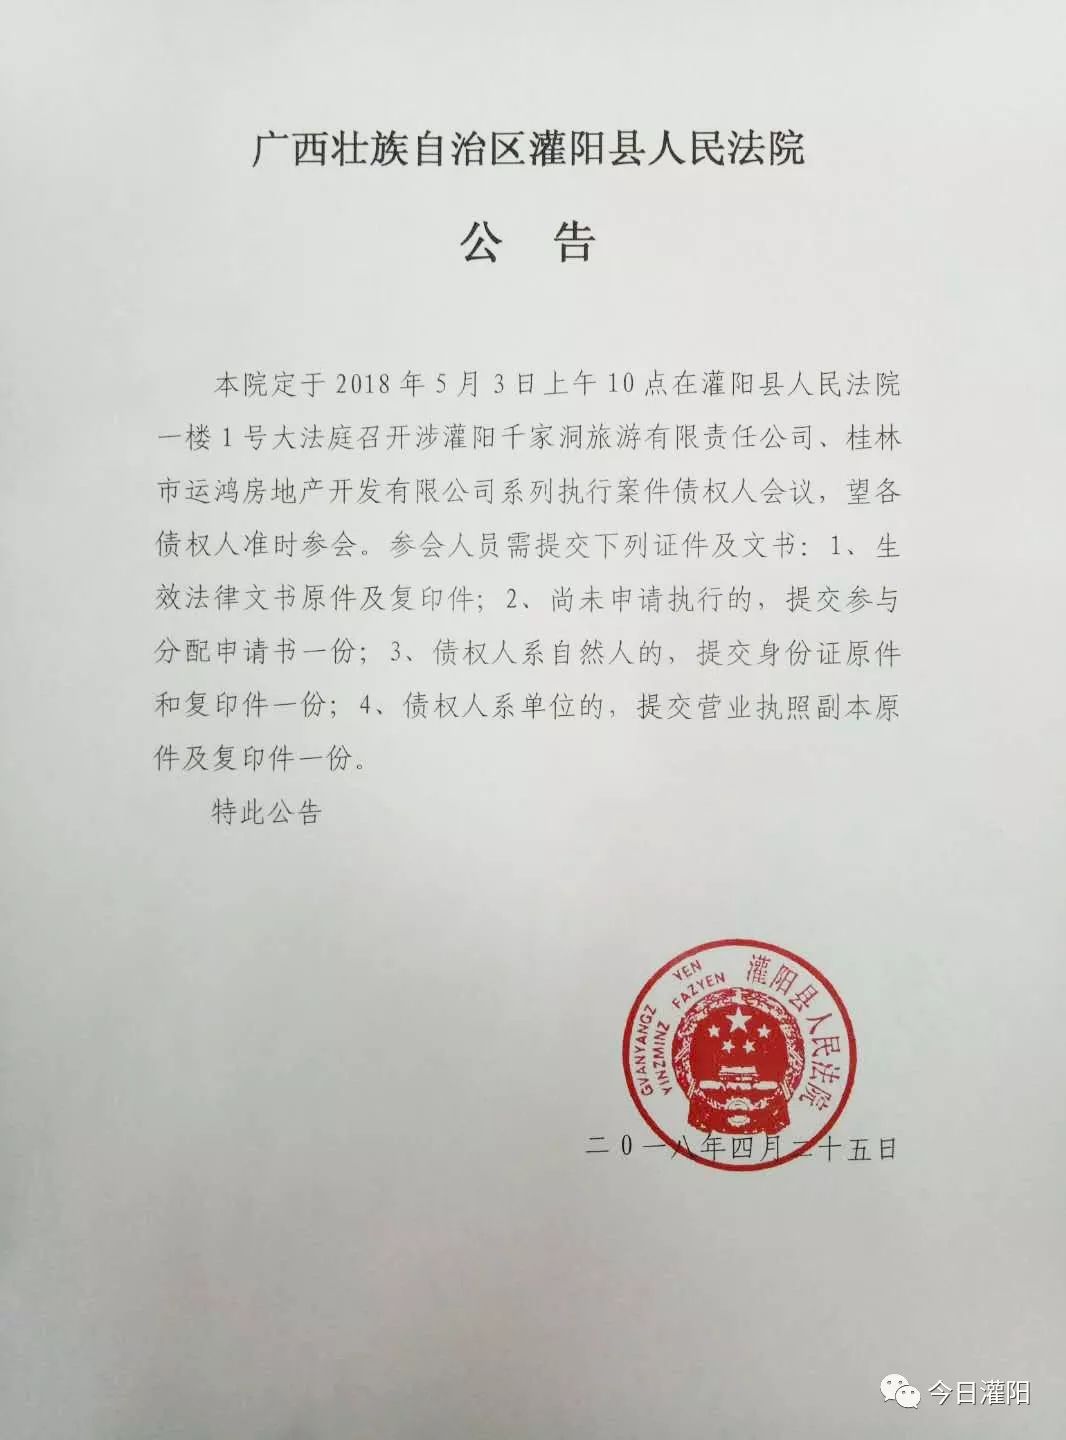 【公告】广西壮族自治区灌阳县人民法院公告